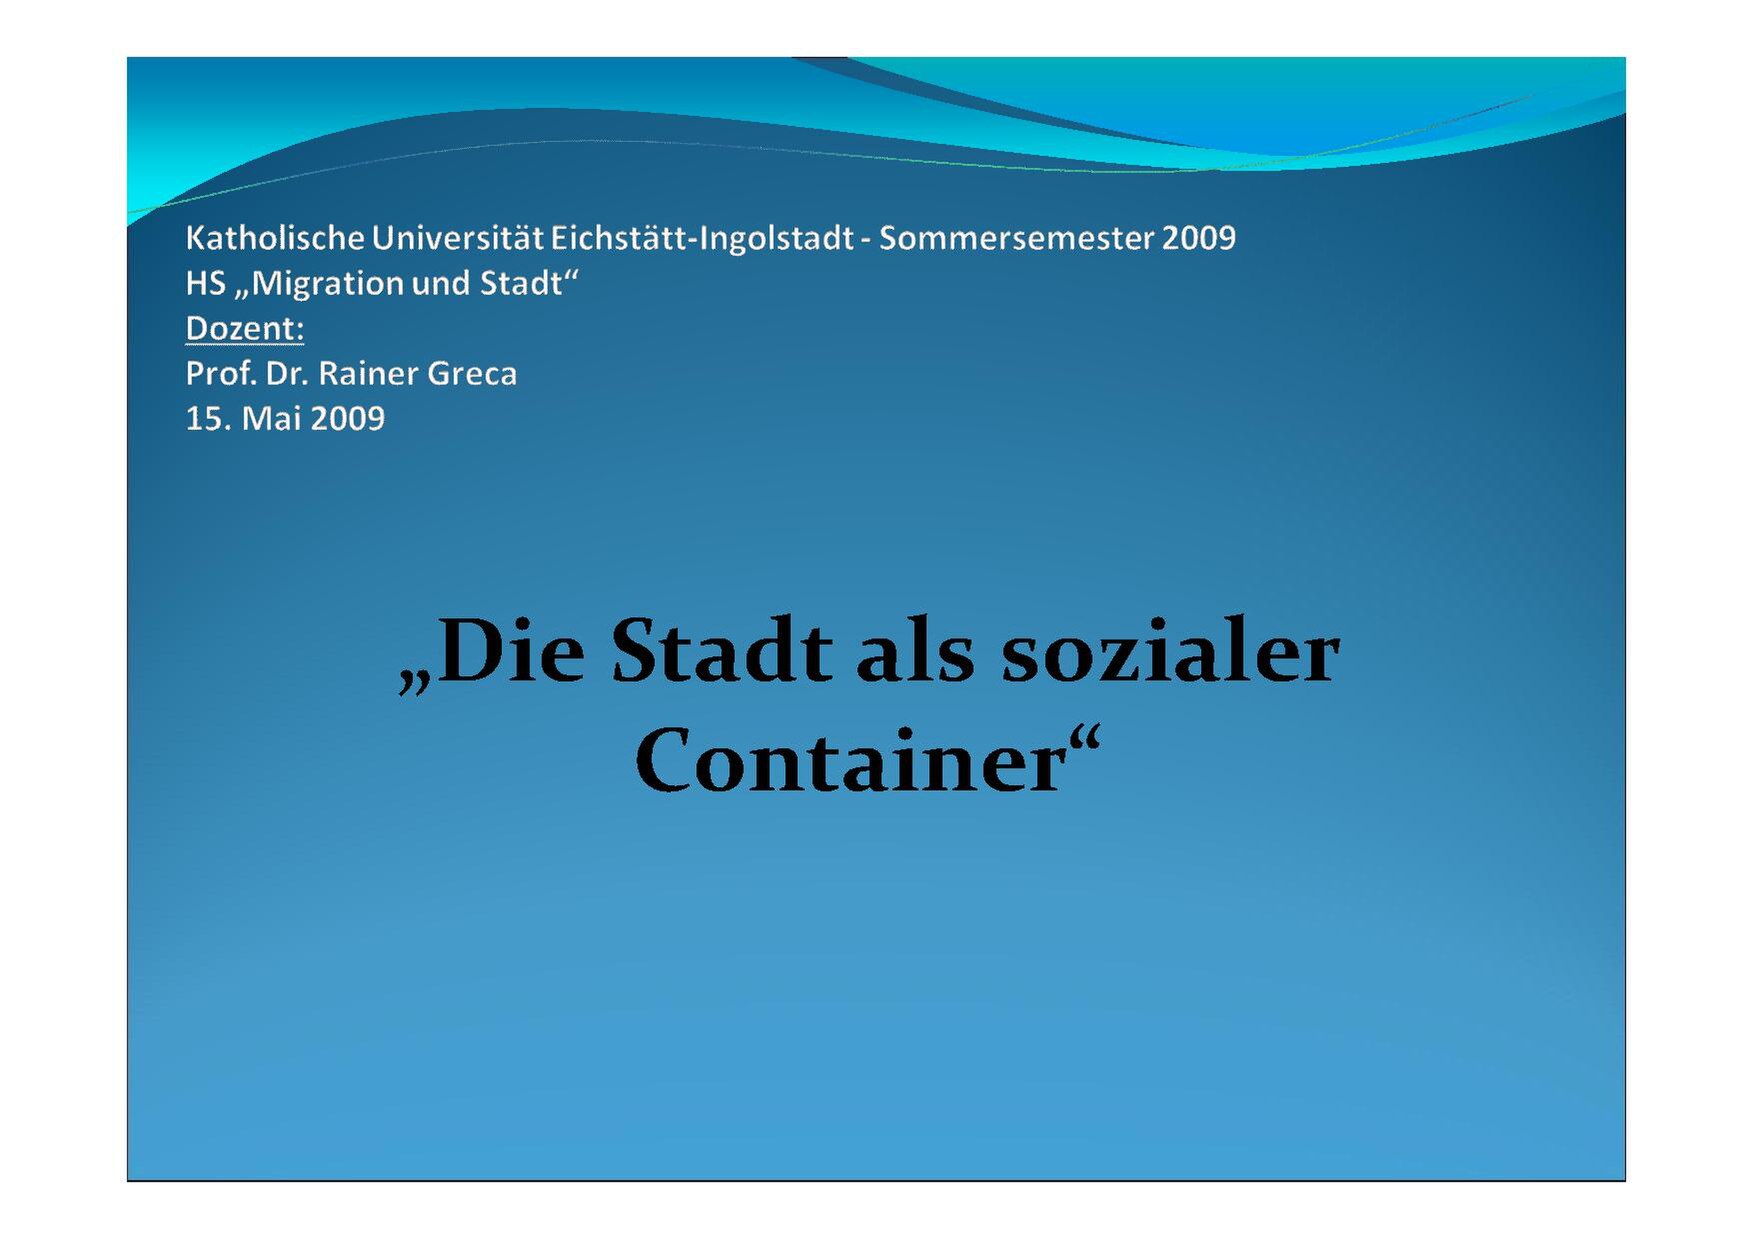 Die Stadt als sozialer Container - Prof. Dr. Rainer Greca (PDF)